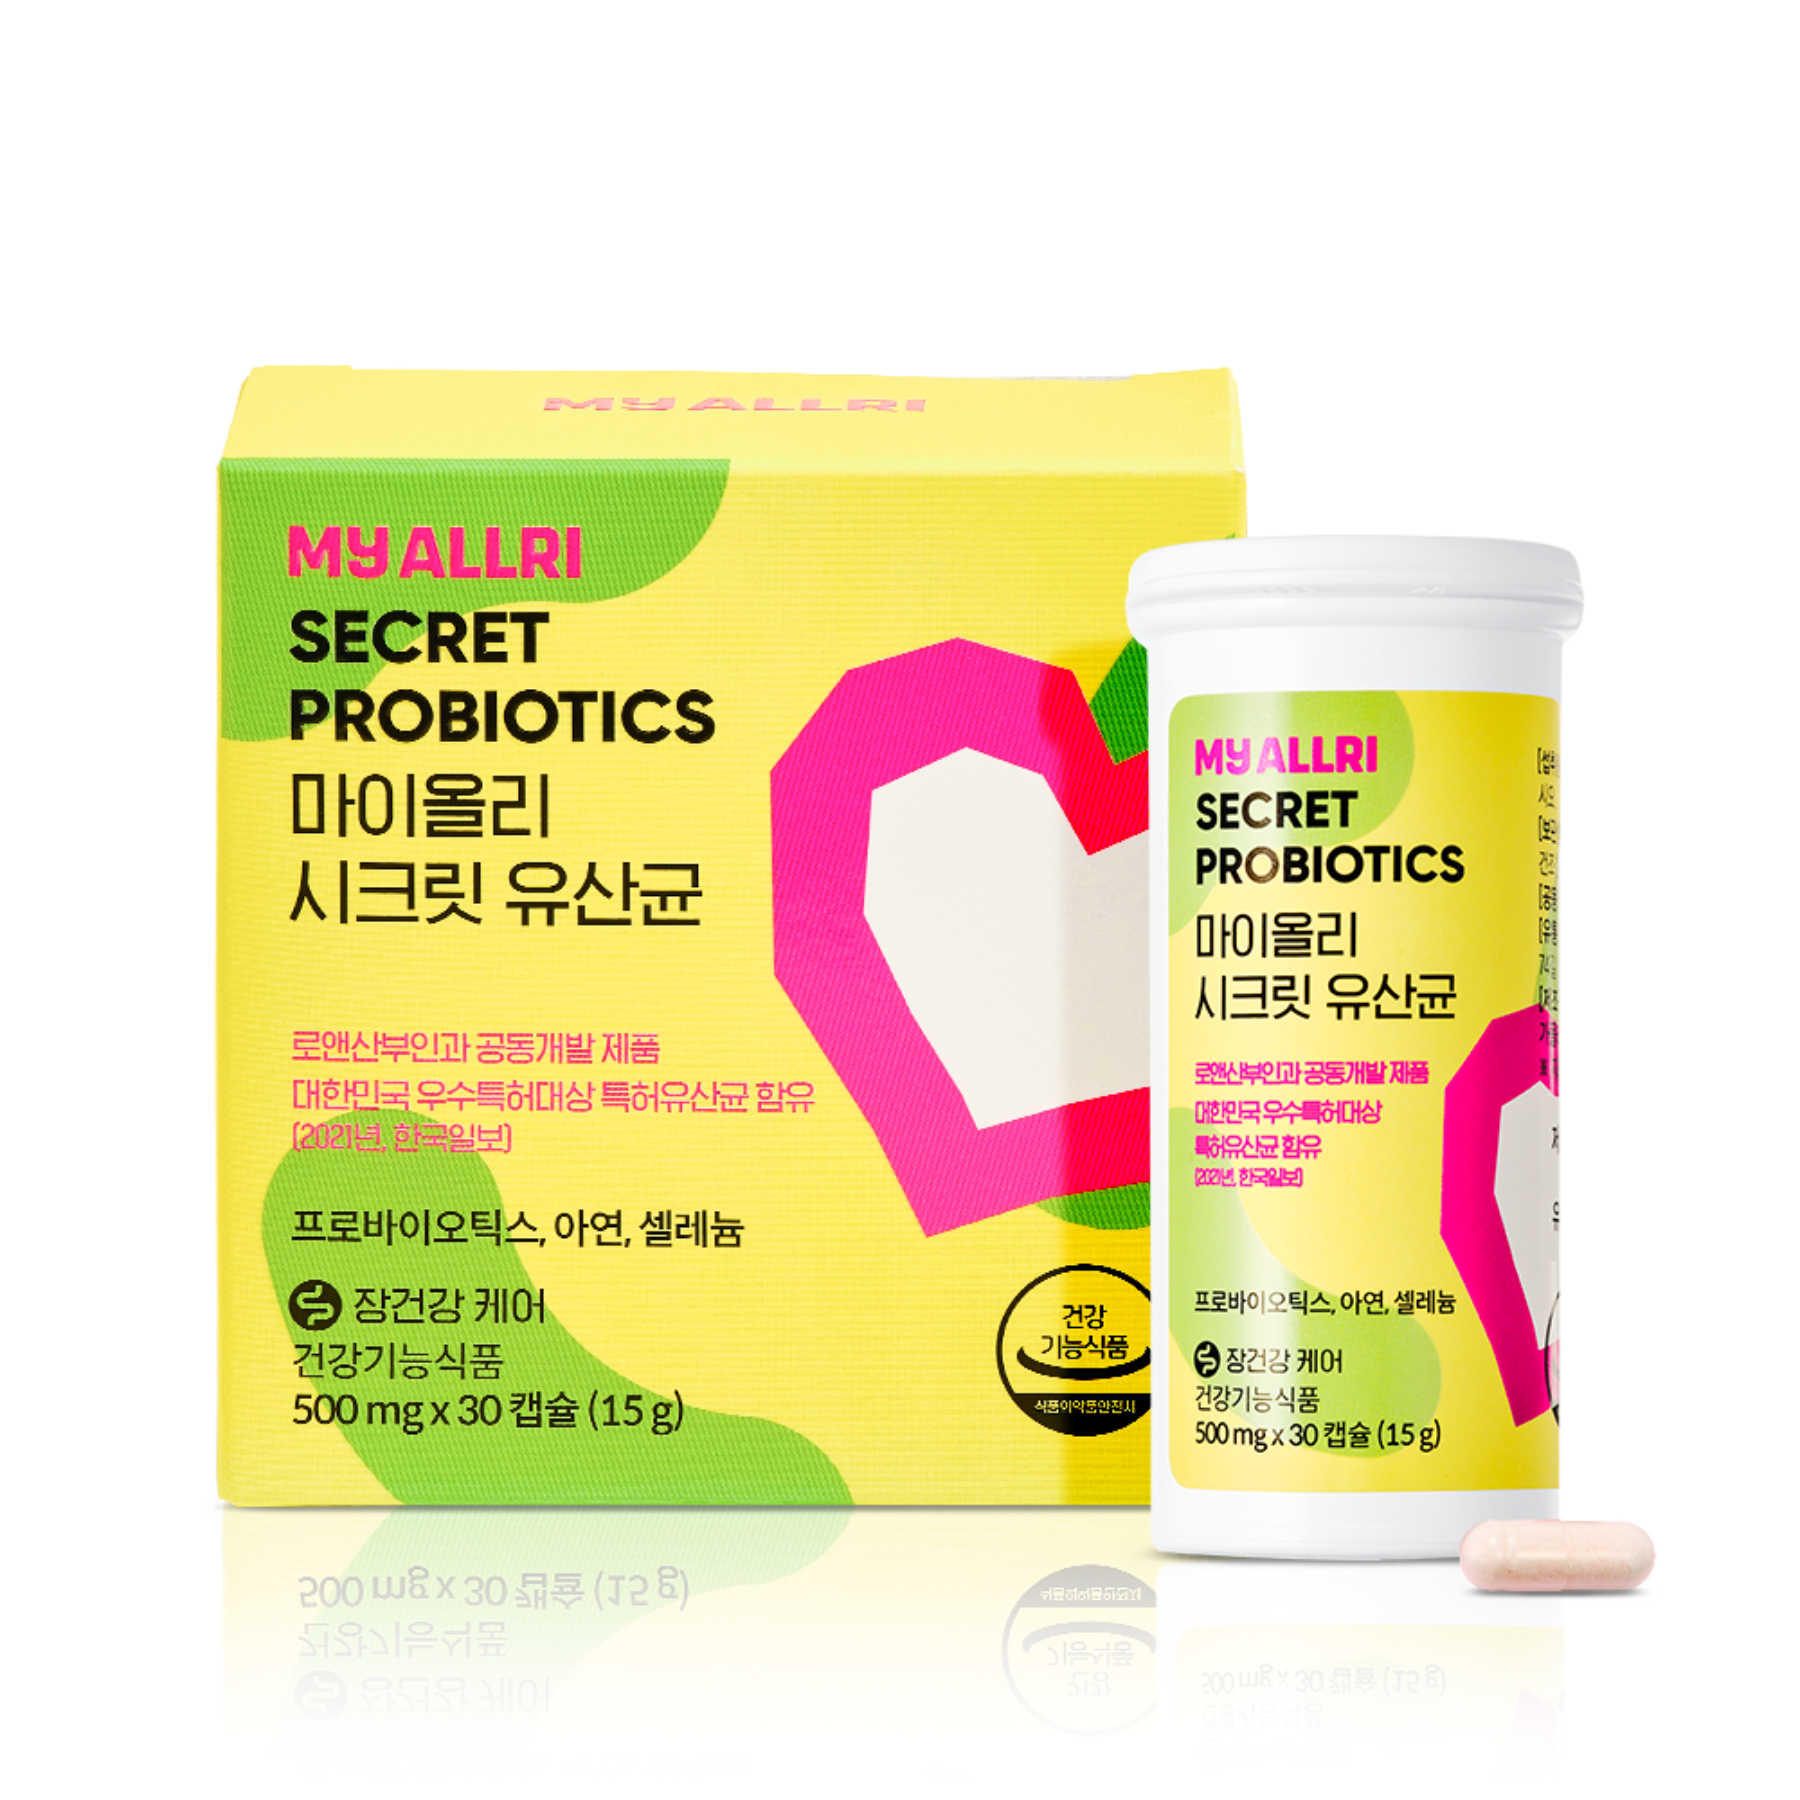 1 secret lactic acid bacteria (1 month)